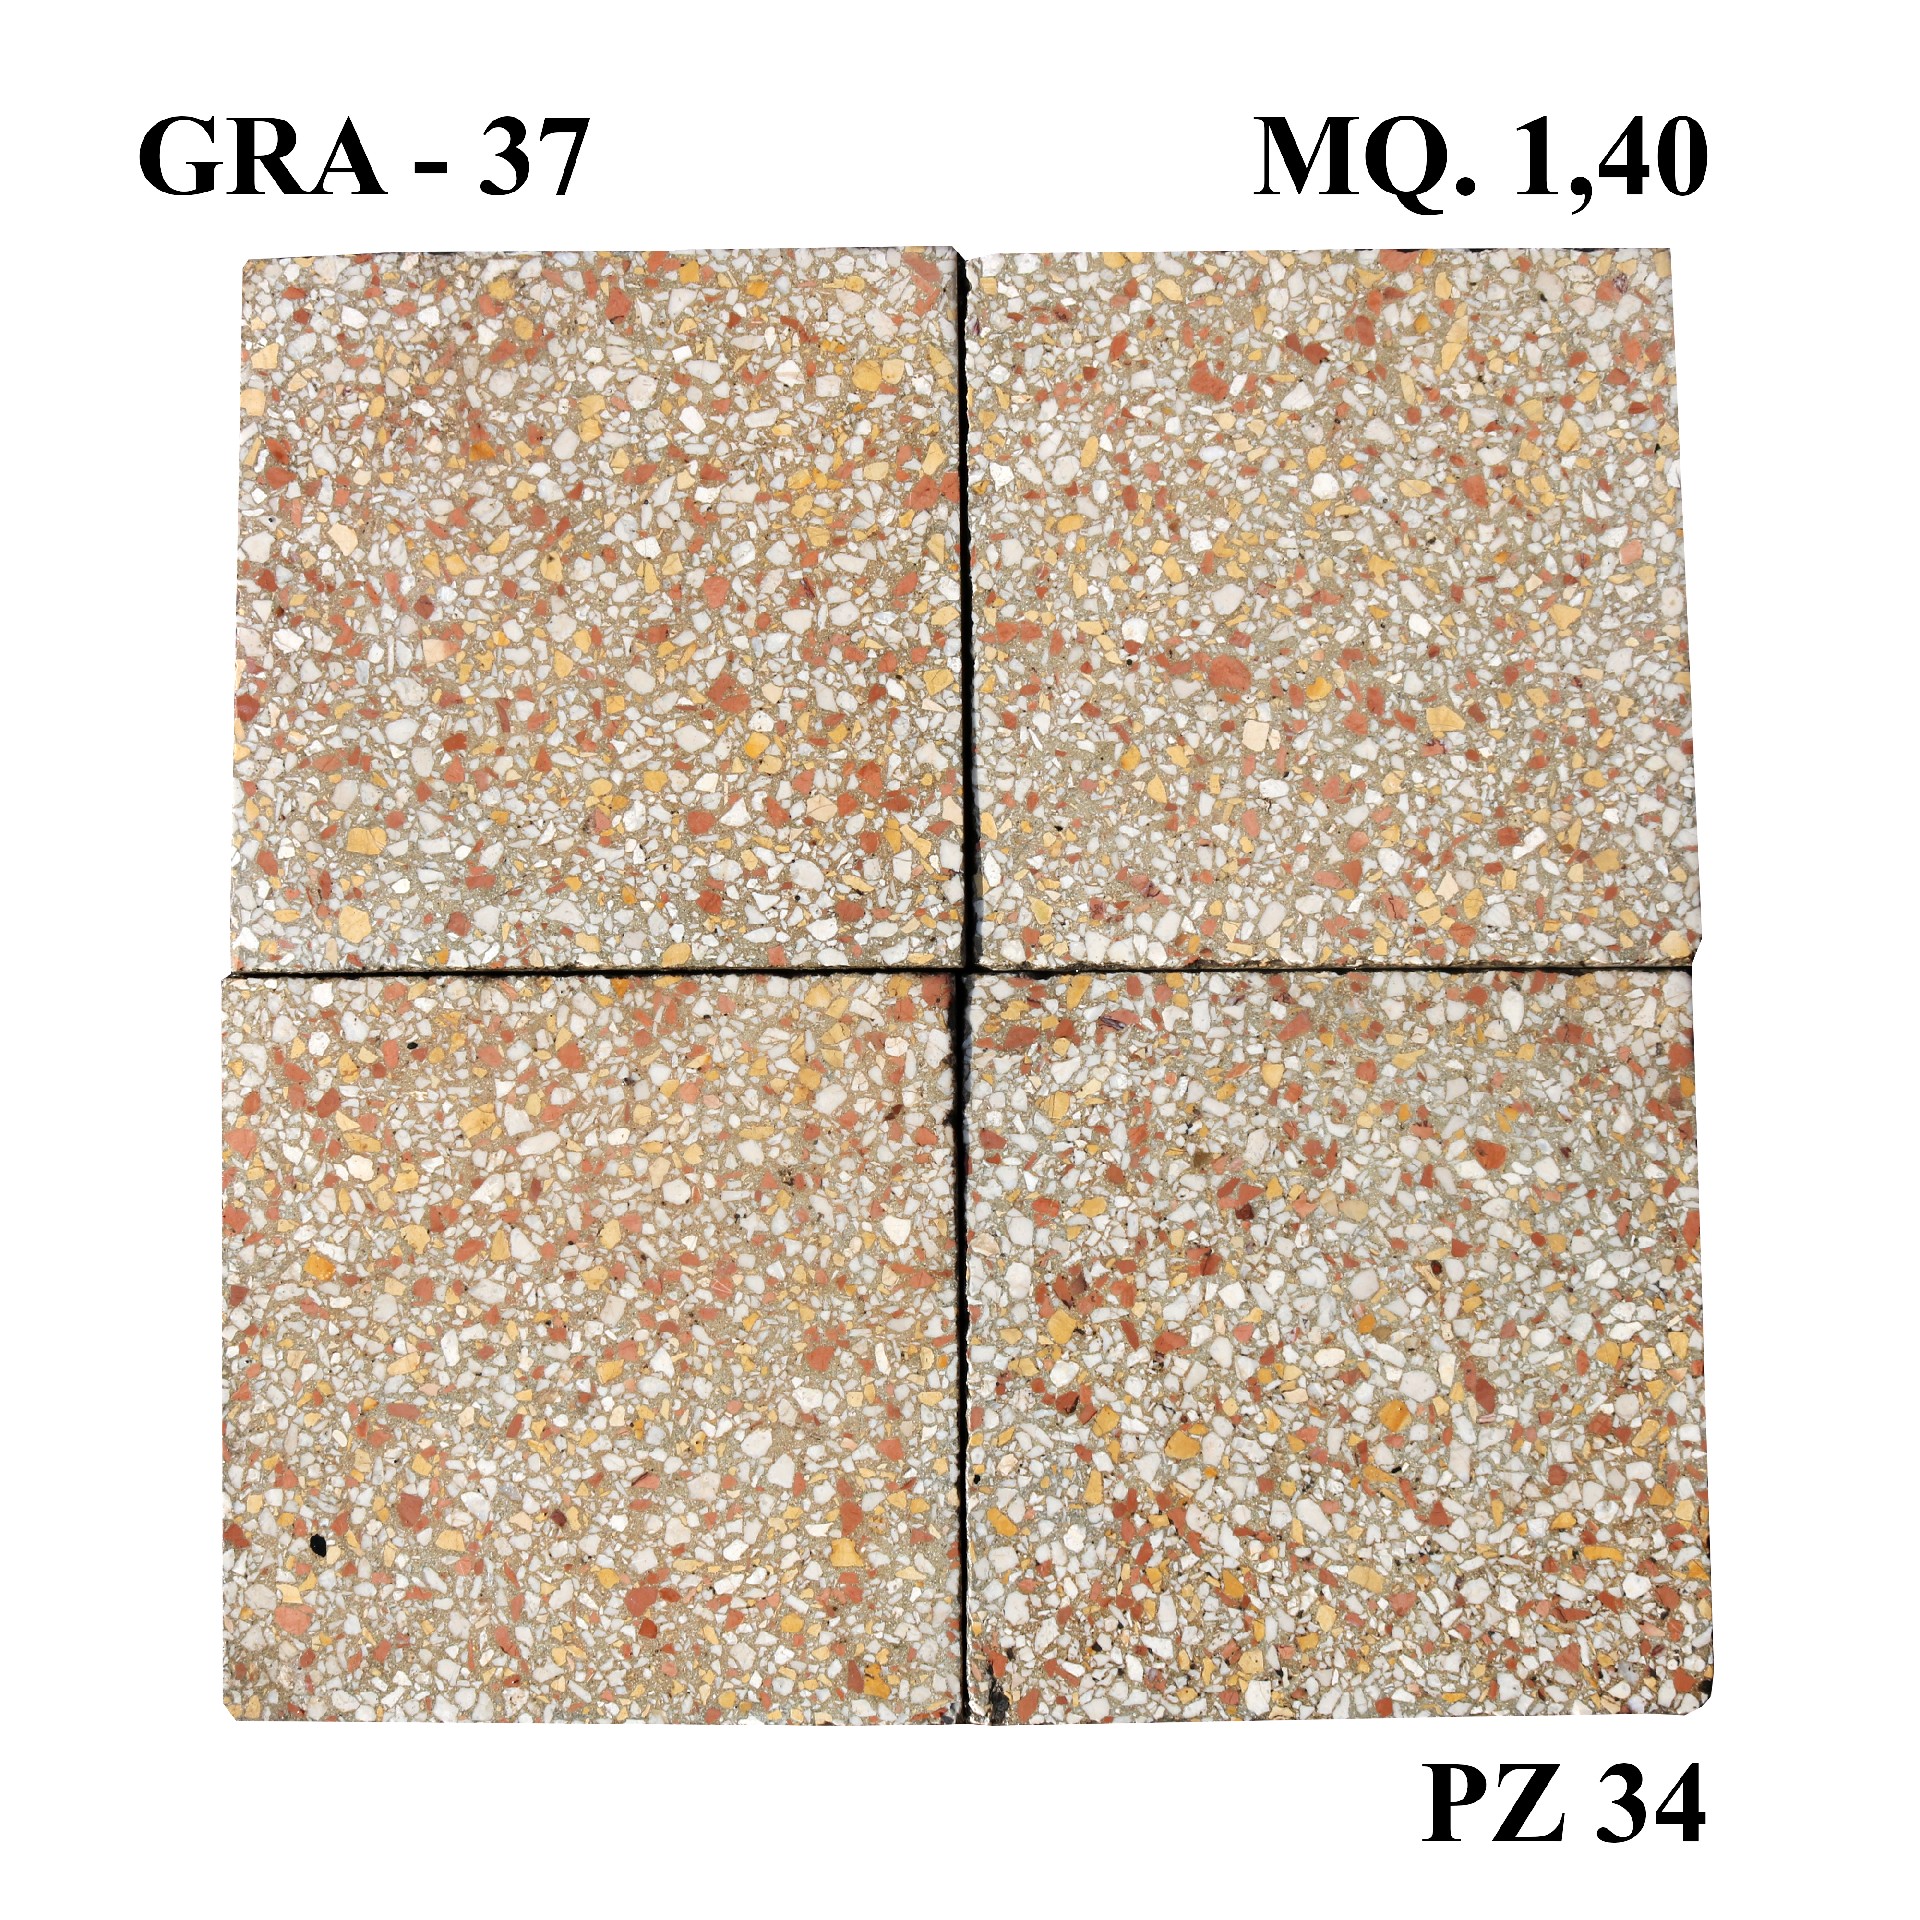 Antica pavimentazione in graniglia cm20x20 - 1